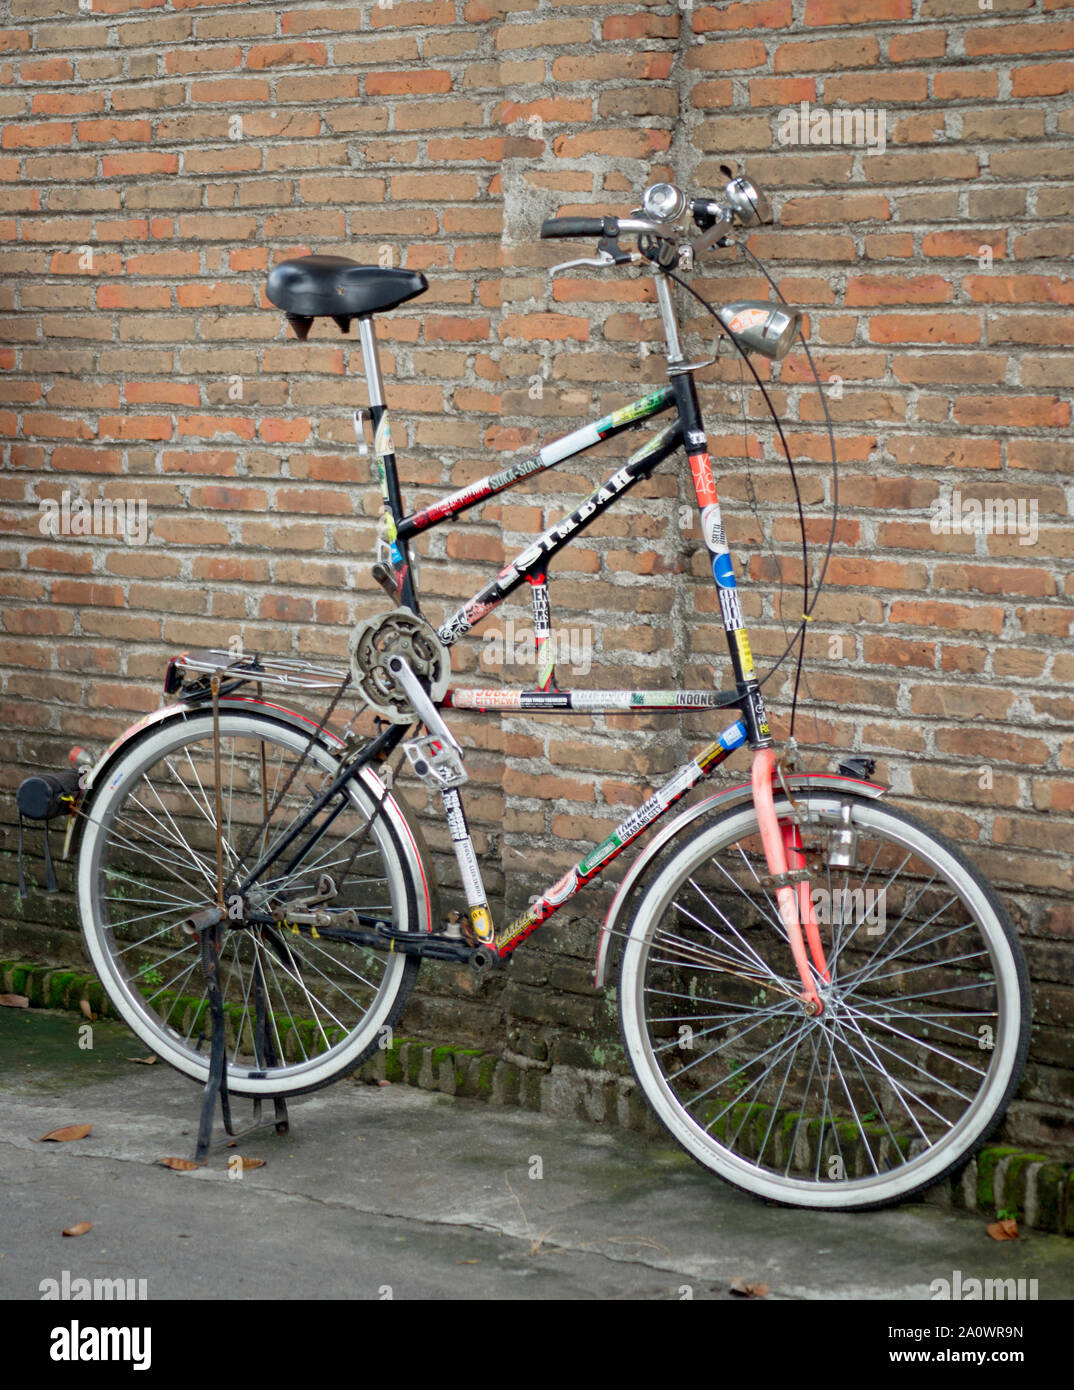 Bicicletas modificadas, Yogyakarta, Indonesia Fotografía de stock - Alamy